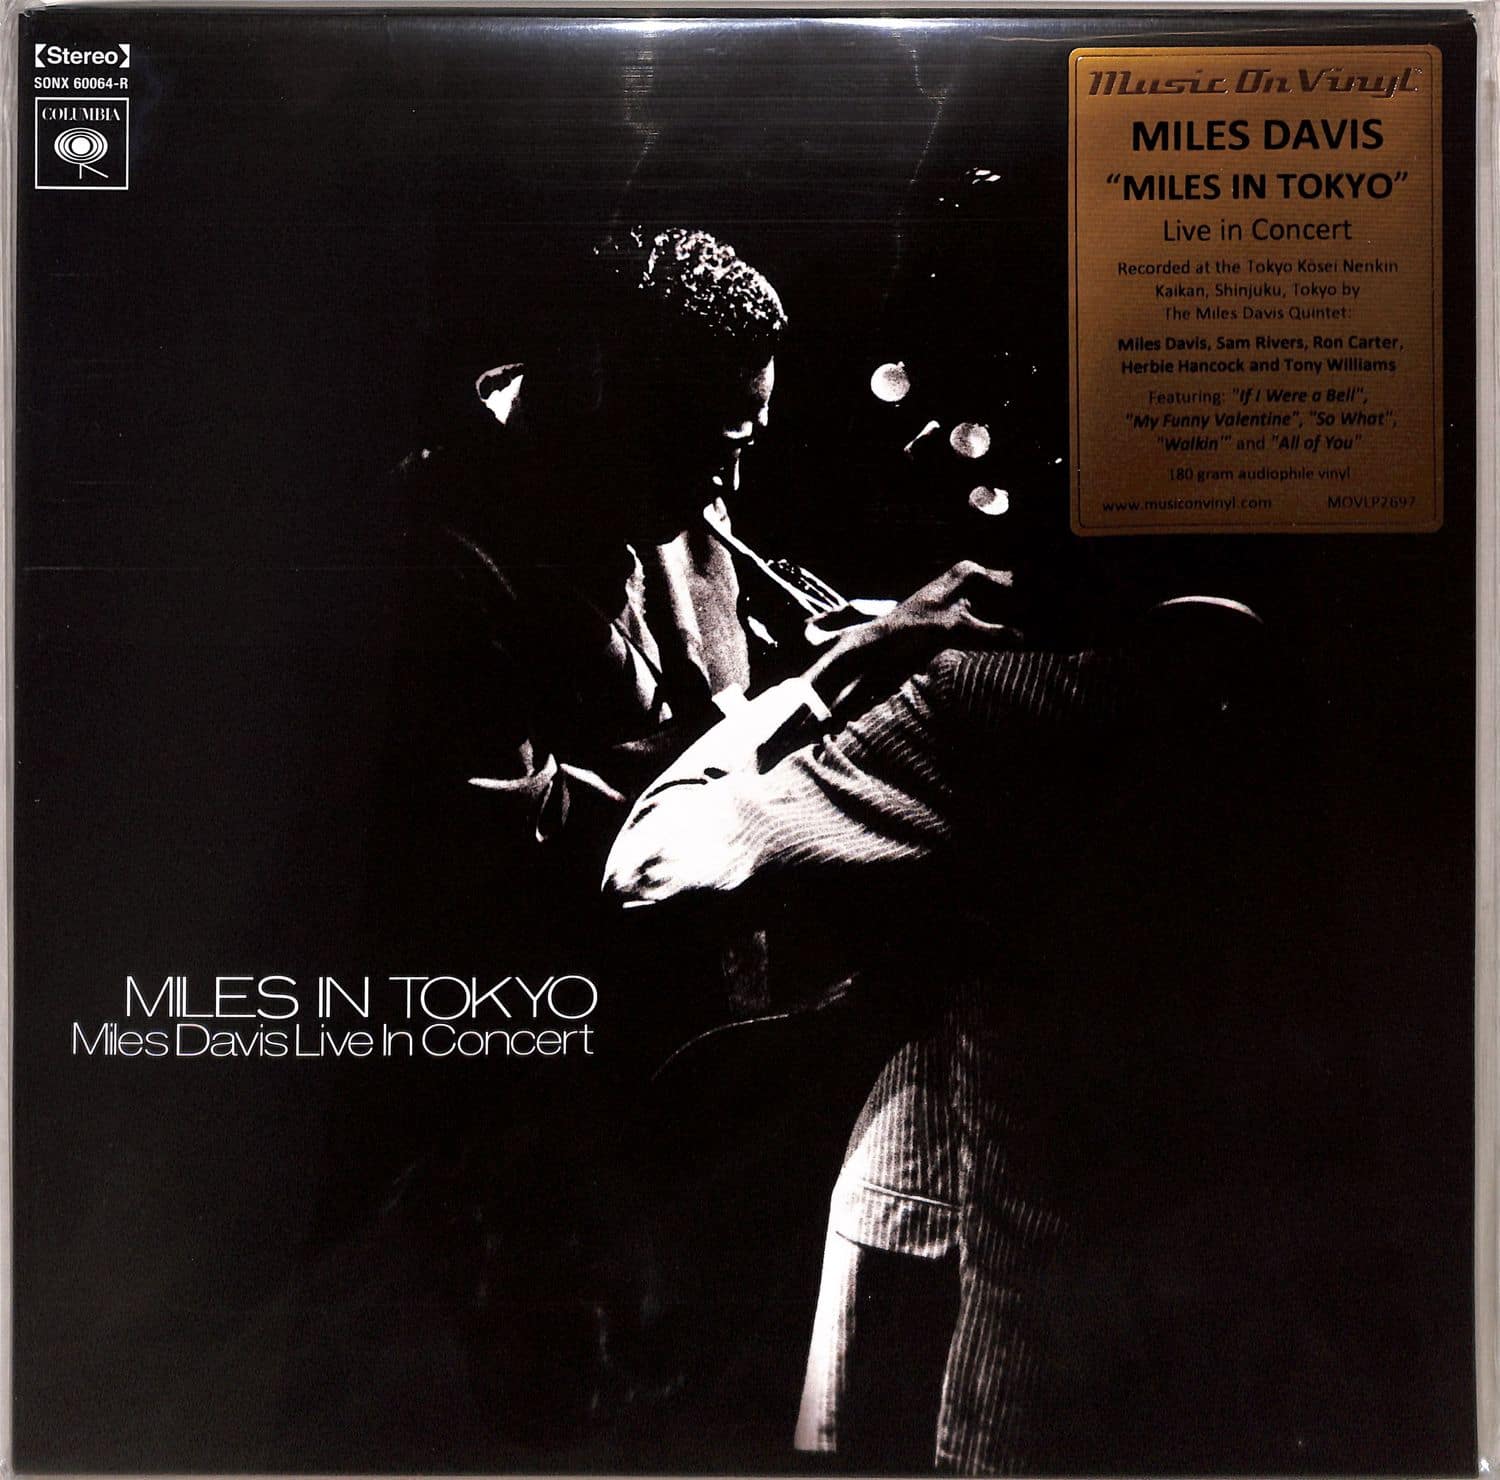 Miles Davis - MILES IN TOKYO 